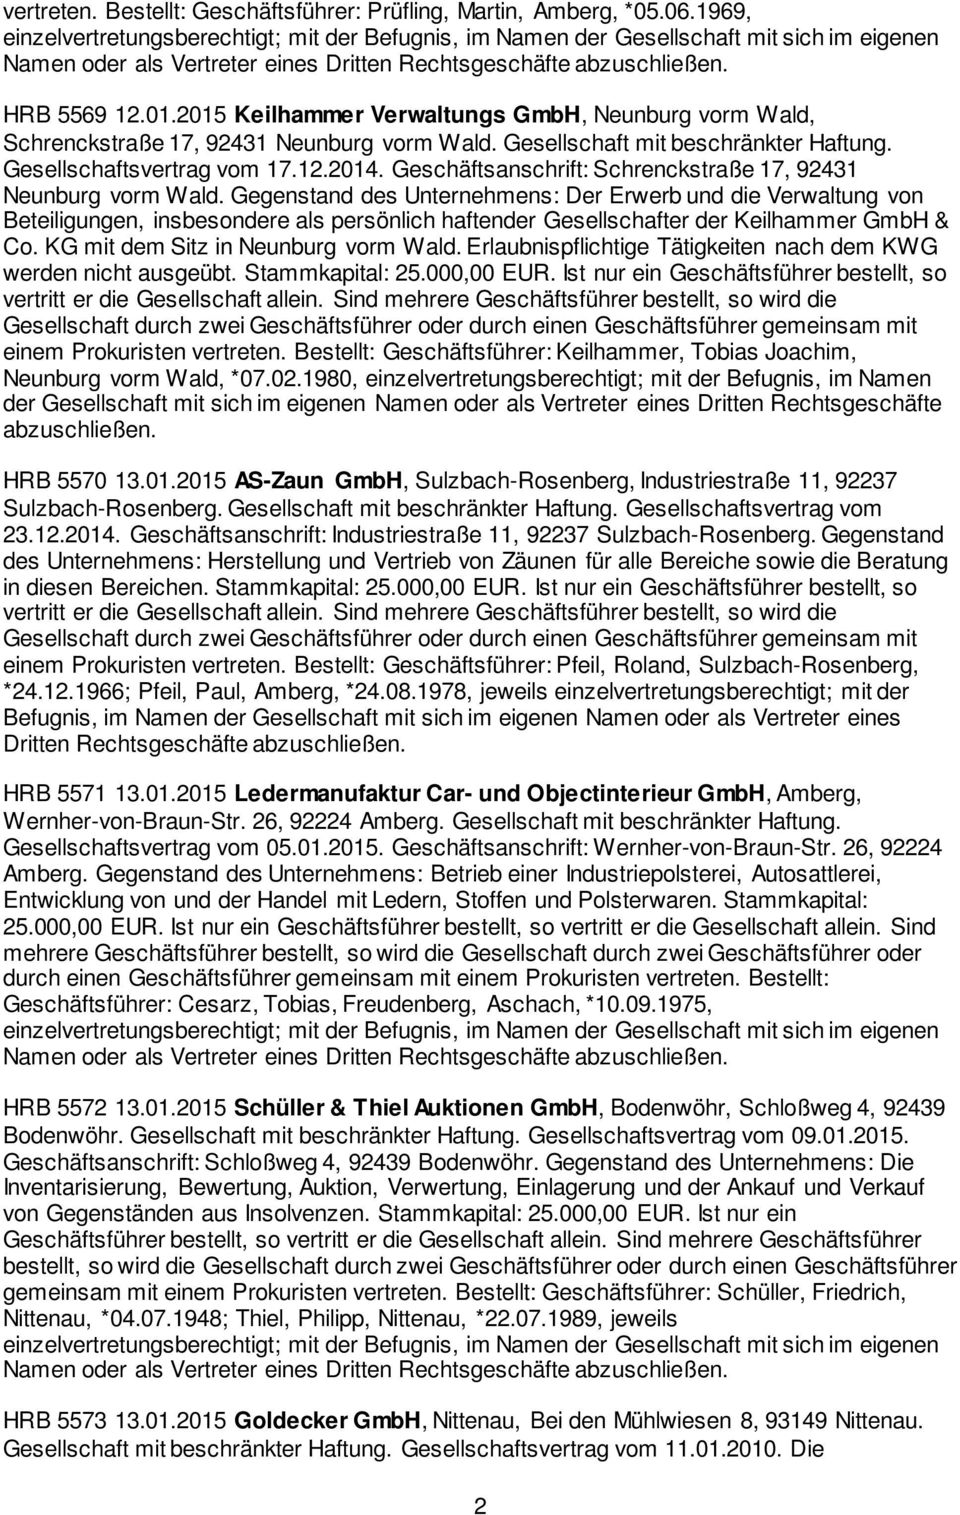 Gegenstand des Unternehmens: Der Erwerb und die Verwaltung von Beteiligungen, insbesondere als persönlich haftender Gesellschafter der Keilhammer GmbH & Co. KG mit dem Sitz in Neunburg vorm Wald.